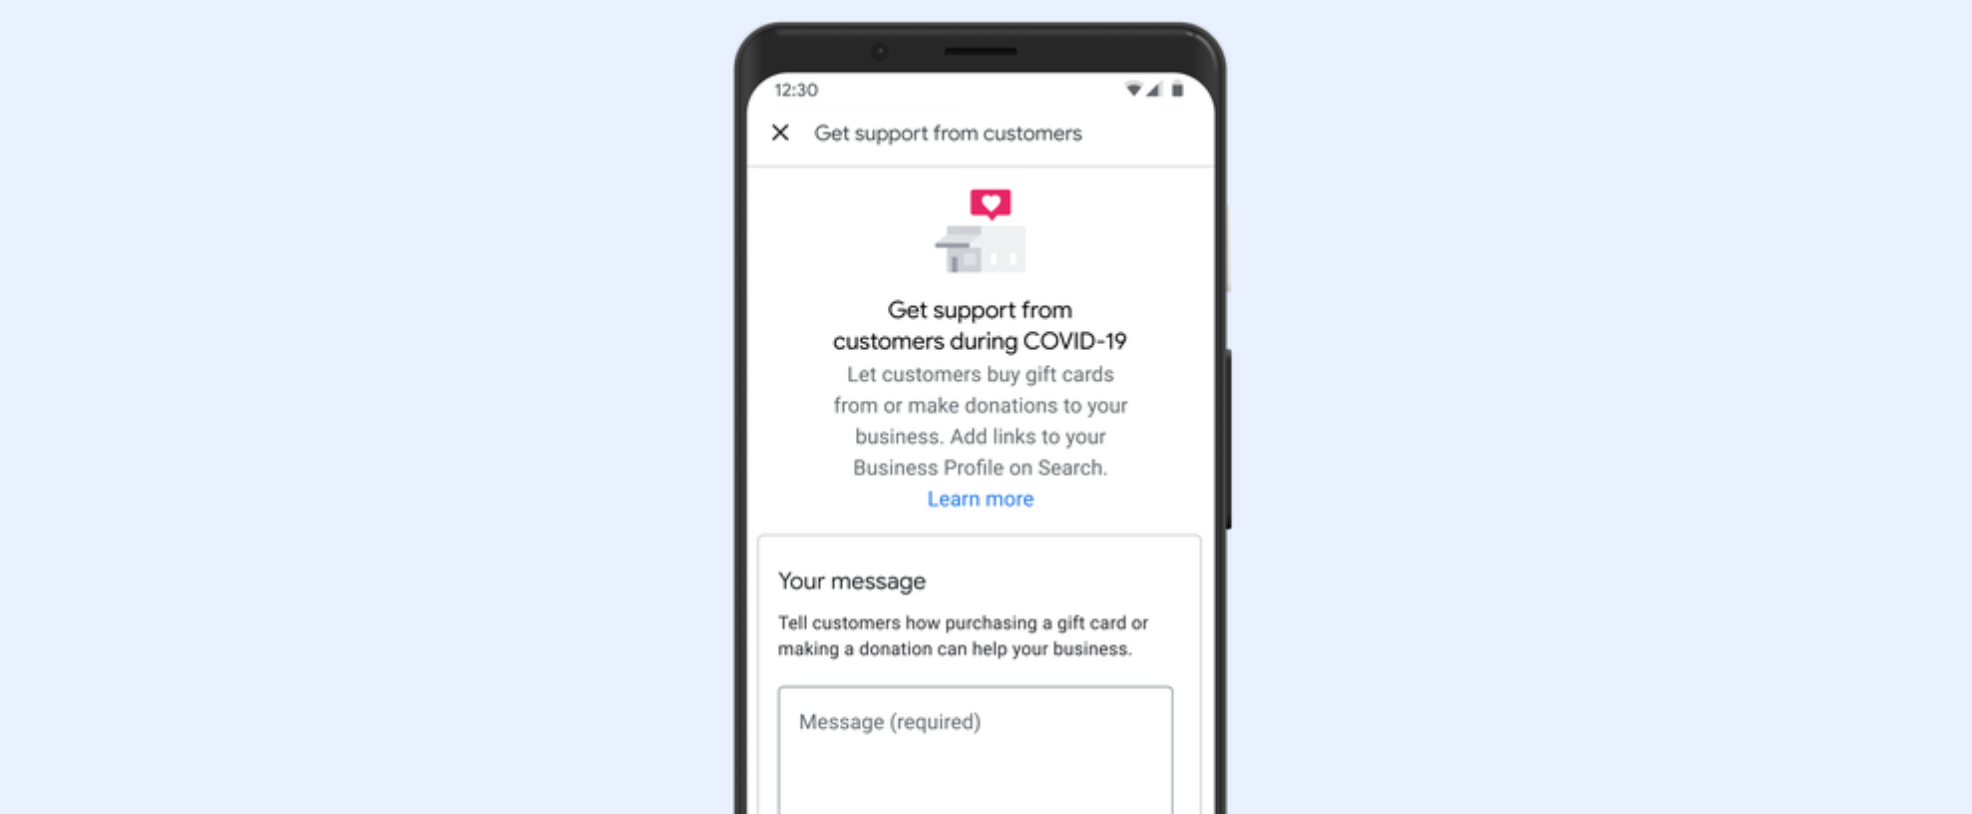 Google dodáva ľuďom spôsob podpory miestnych firiem: Odkazy na dary a darčekové karty pripojené k profilom firiem